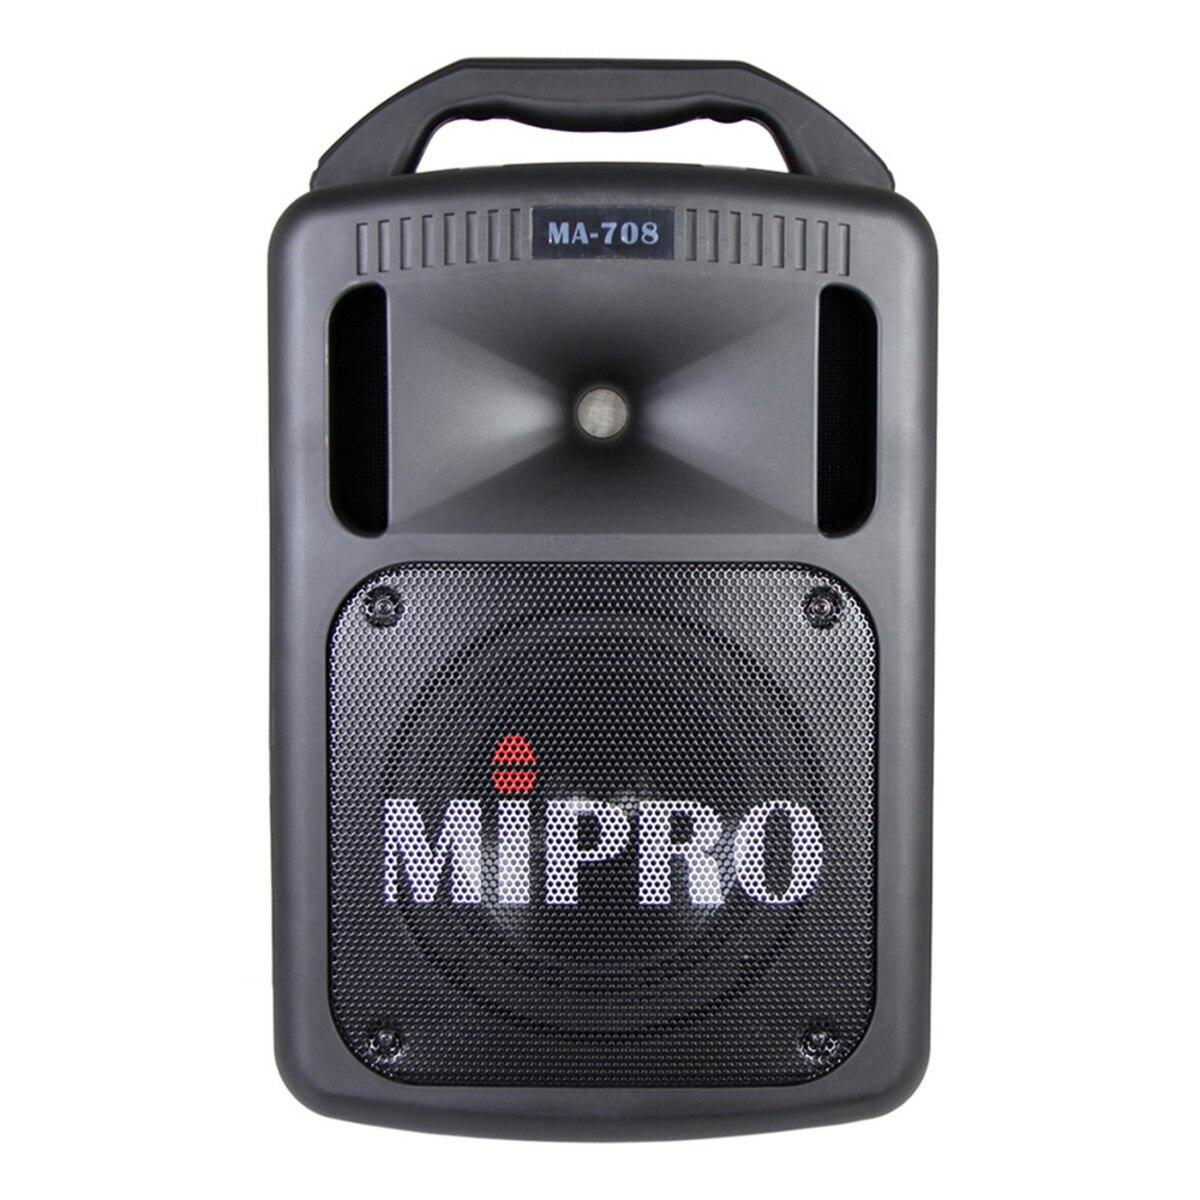 MIPRO 豪華型手提式無線擴音機 全配超值組 MA-708